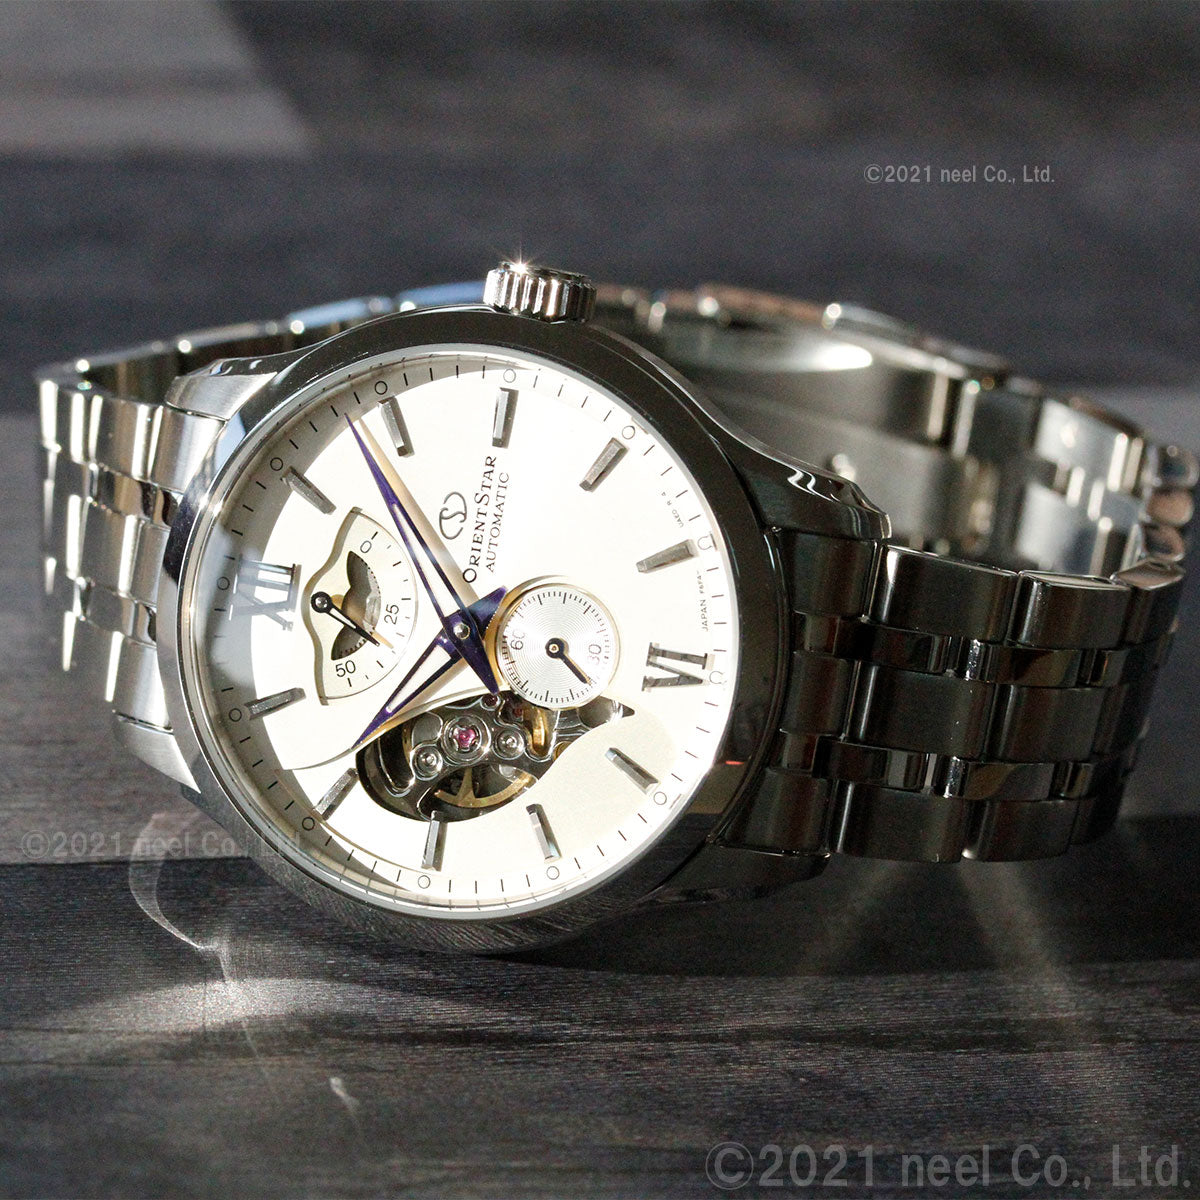 オリエントスター ORIENT STAR 腕時計 メンズ 自動巻き コンテンポラリー CONTEMPORALY レイヤードスケルトン RK-AV0B01S